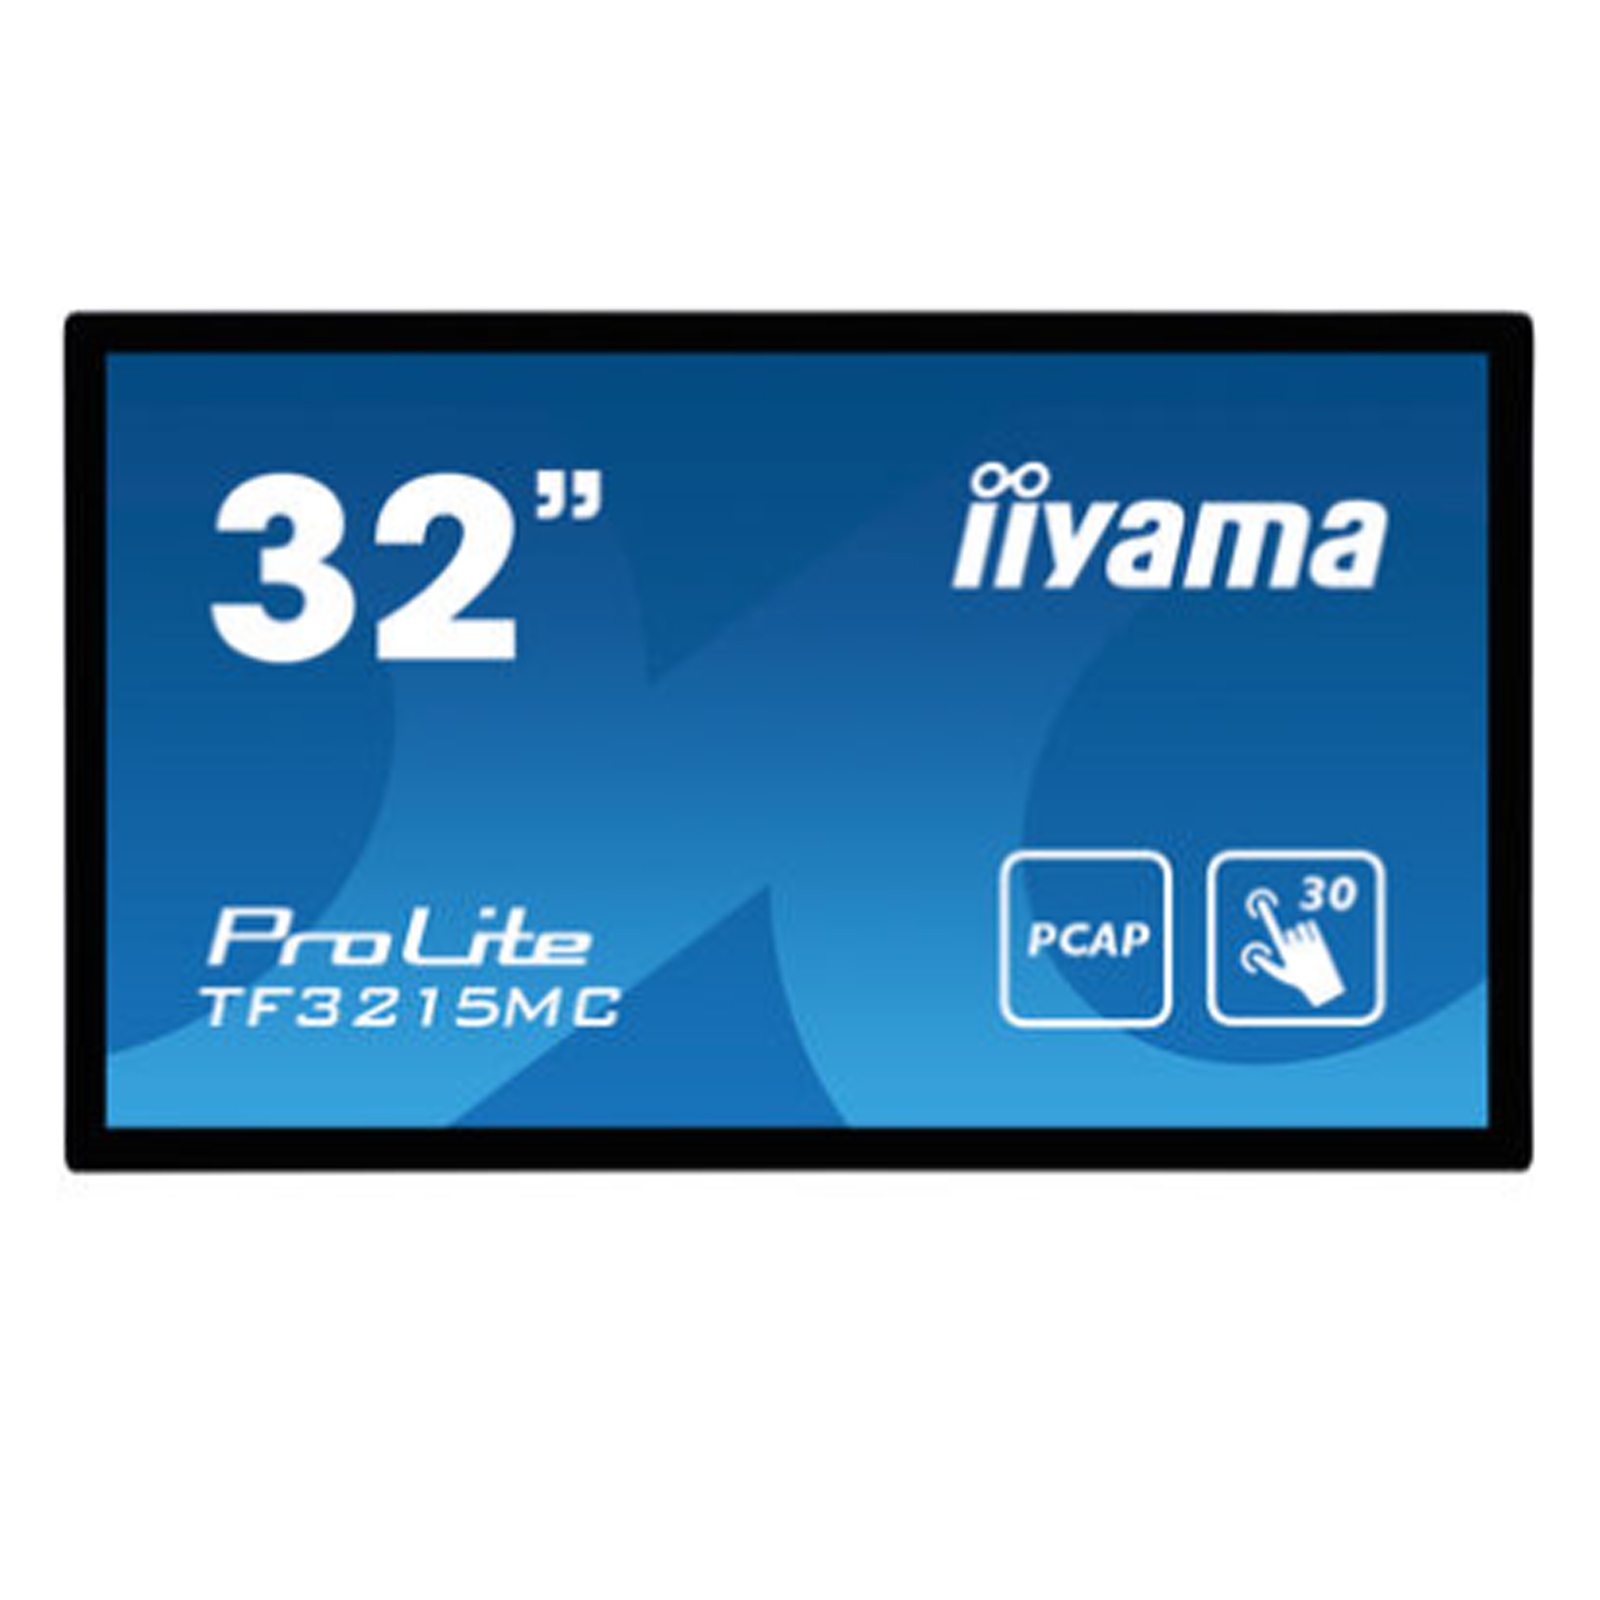 Monitor 32" VA touchscreen iiyama